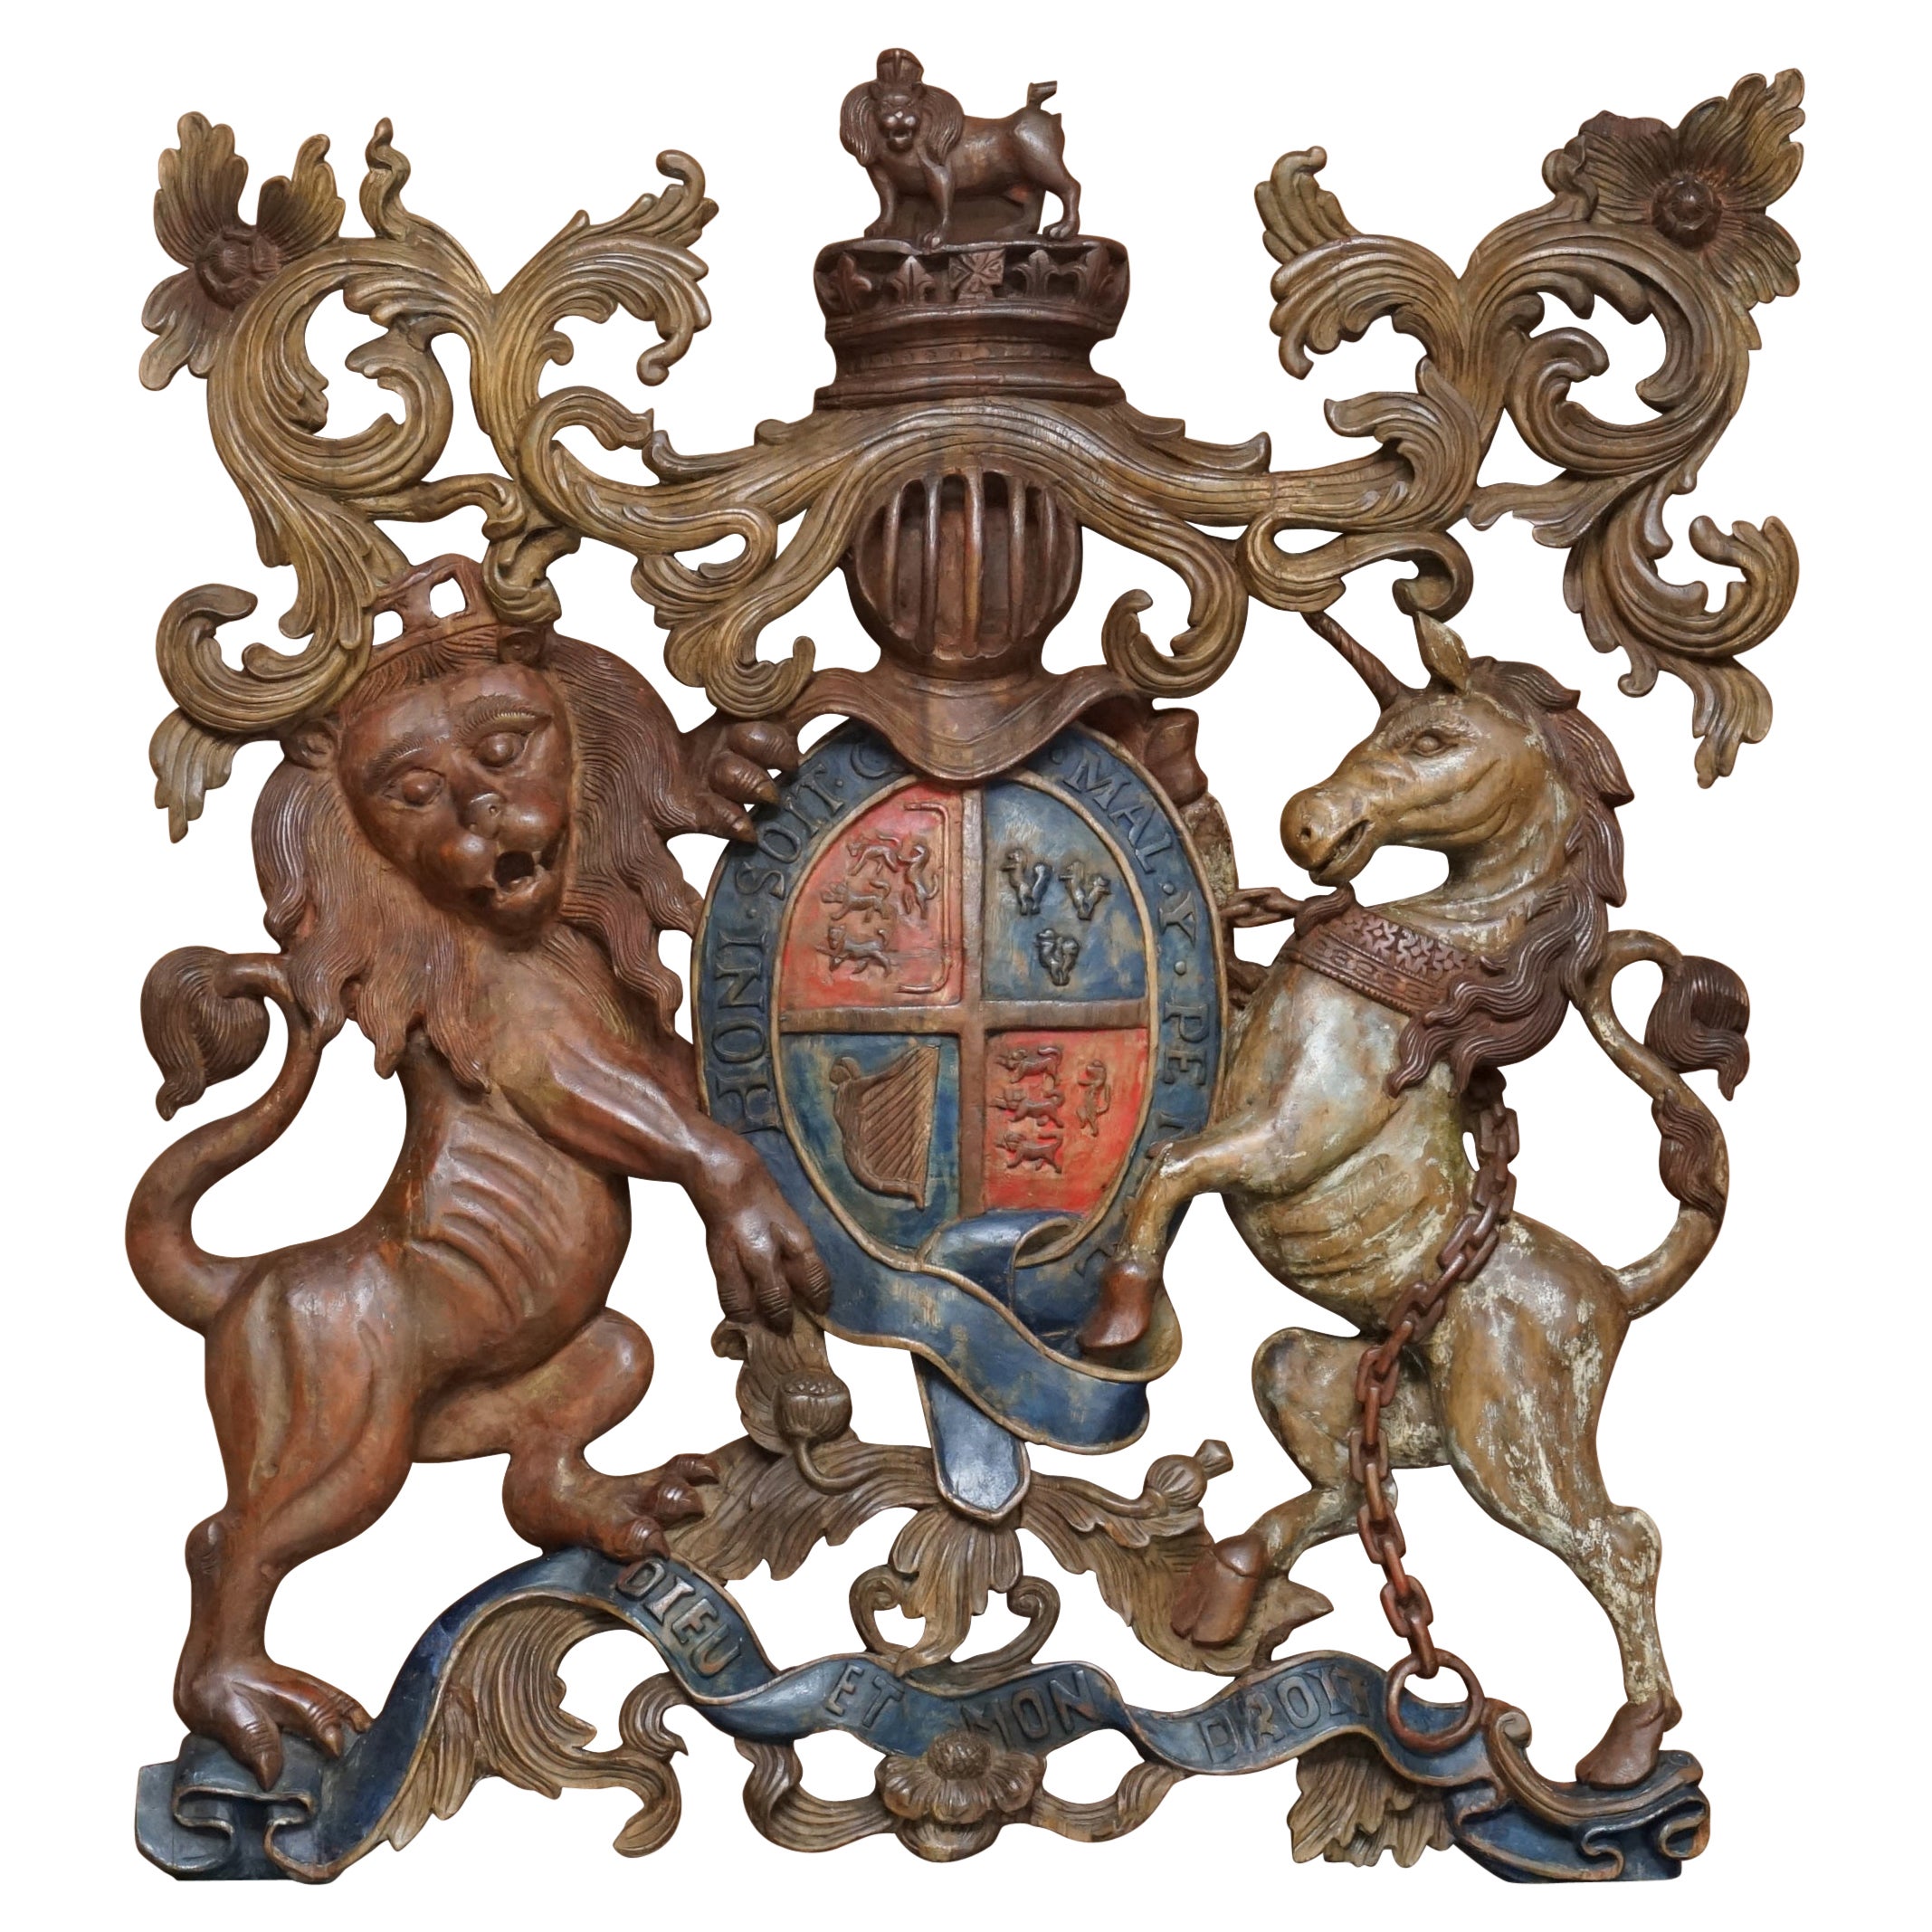 Royal circa 1707-1714 avec armoiries armoriées peintes polychromes sculptées à la main